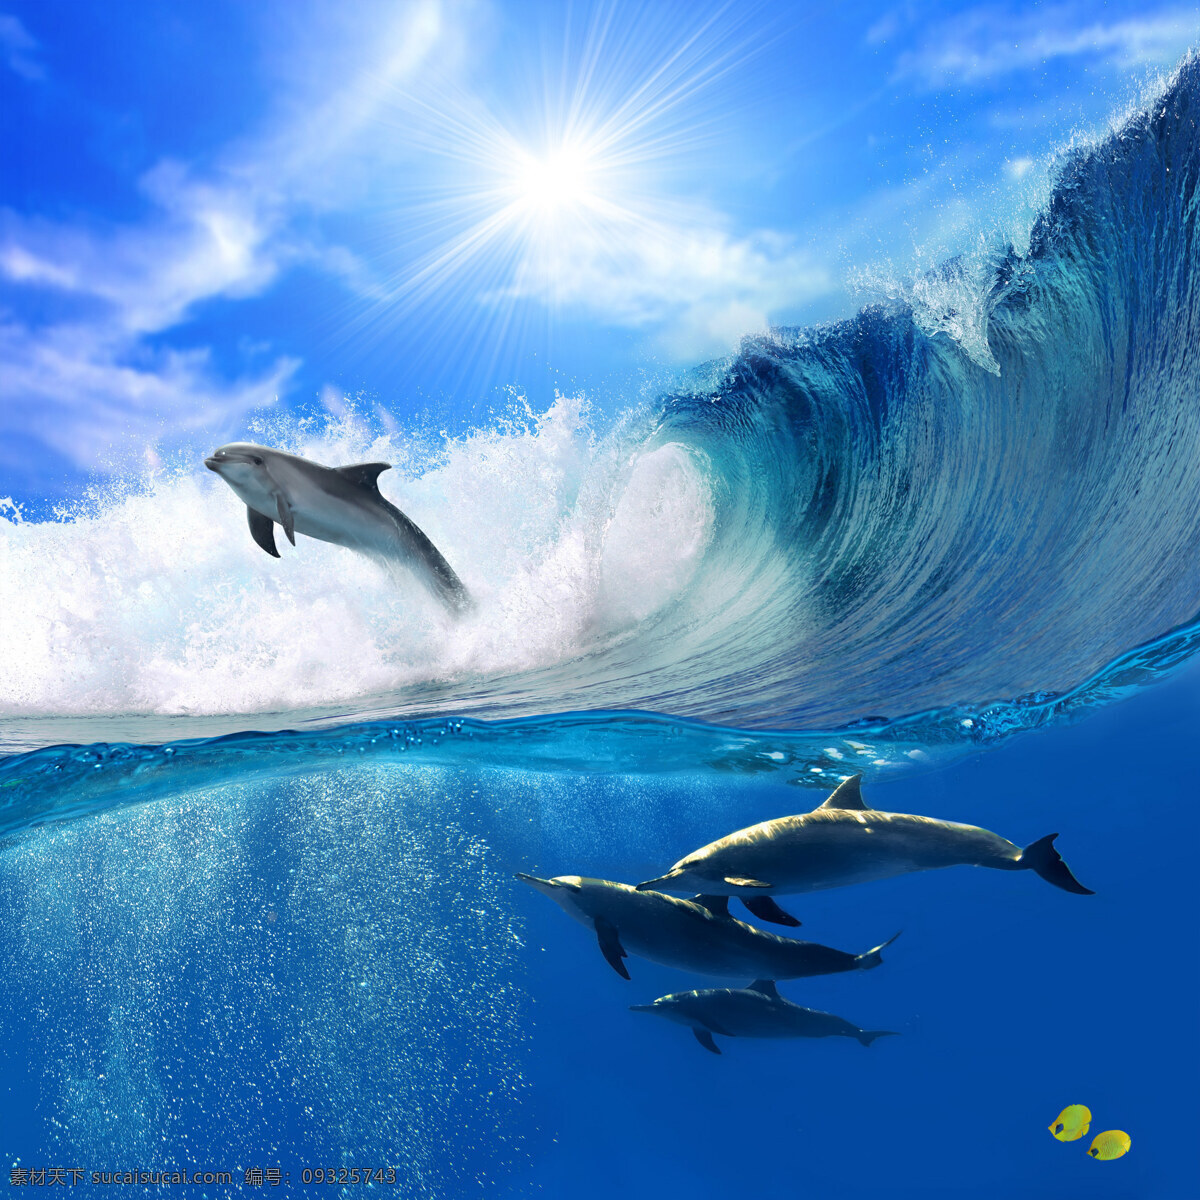 大海 里 跳跃 海豚 动物世界 海底生物 海浪 浪花 海面 风景 美景 摄影图 高清图片 水中生物 生物世界